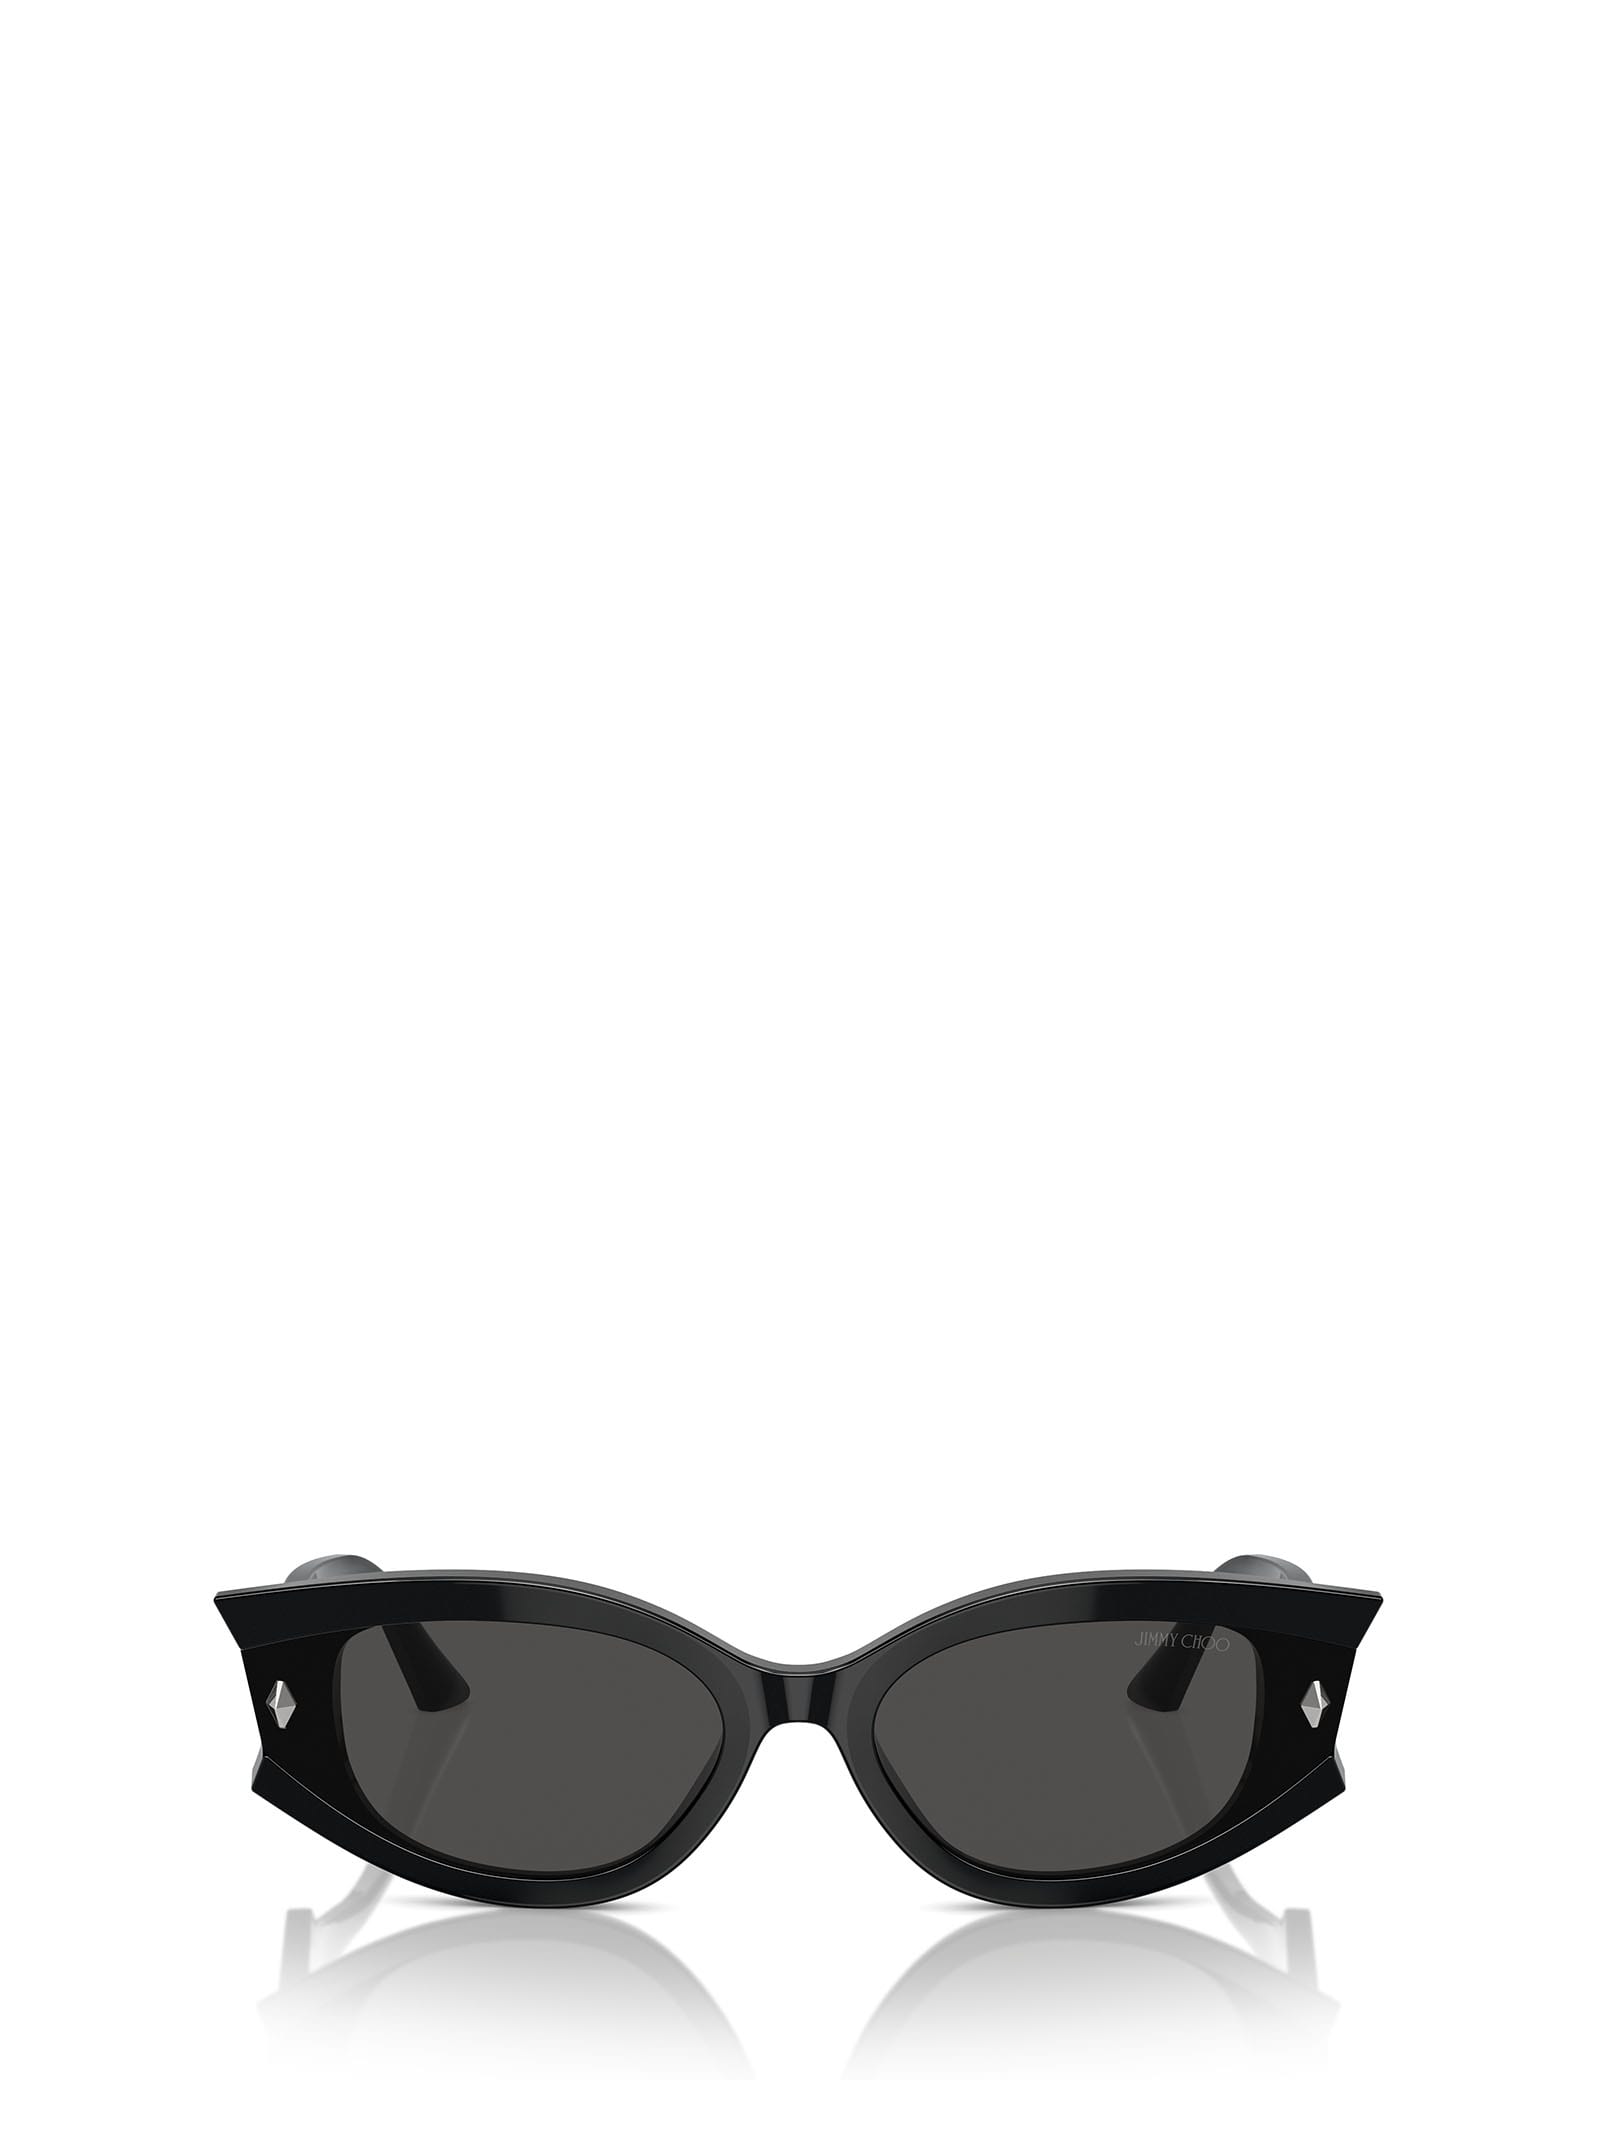 Jc5015u Black Sunglasses